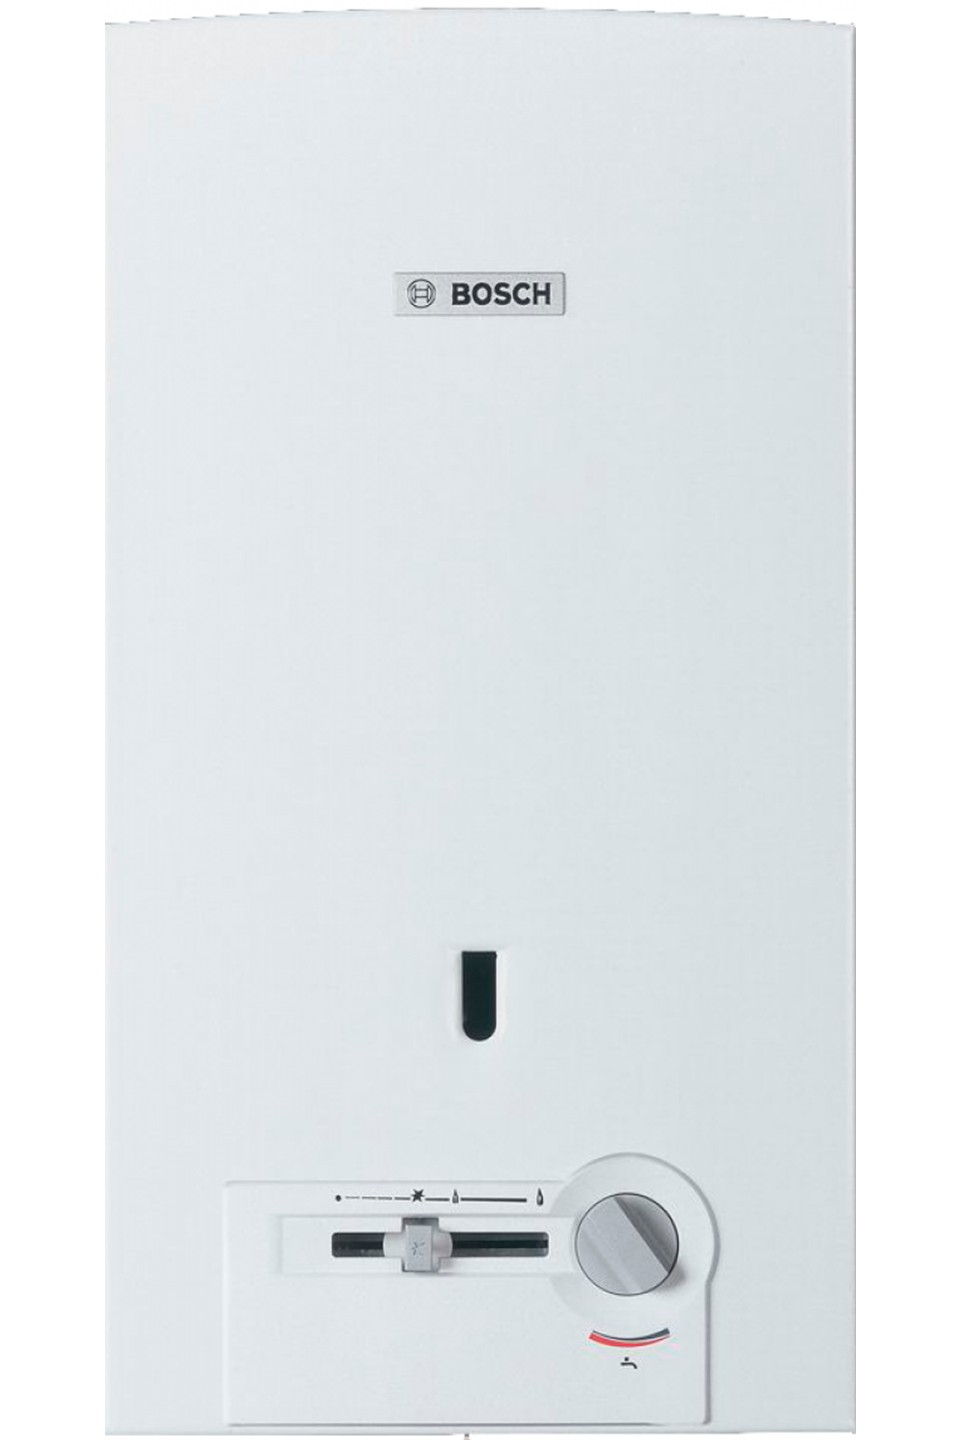 Отзывы газовая колонка с пьезорозжигом Bosch Therm 4000 O W 10-2 P (7701331010) в Украине